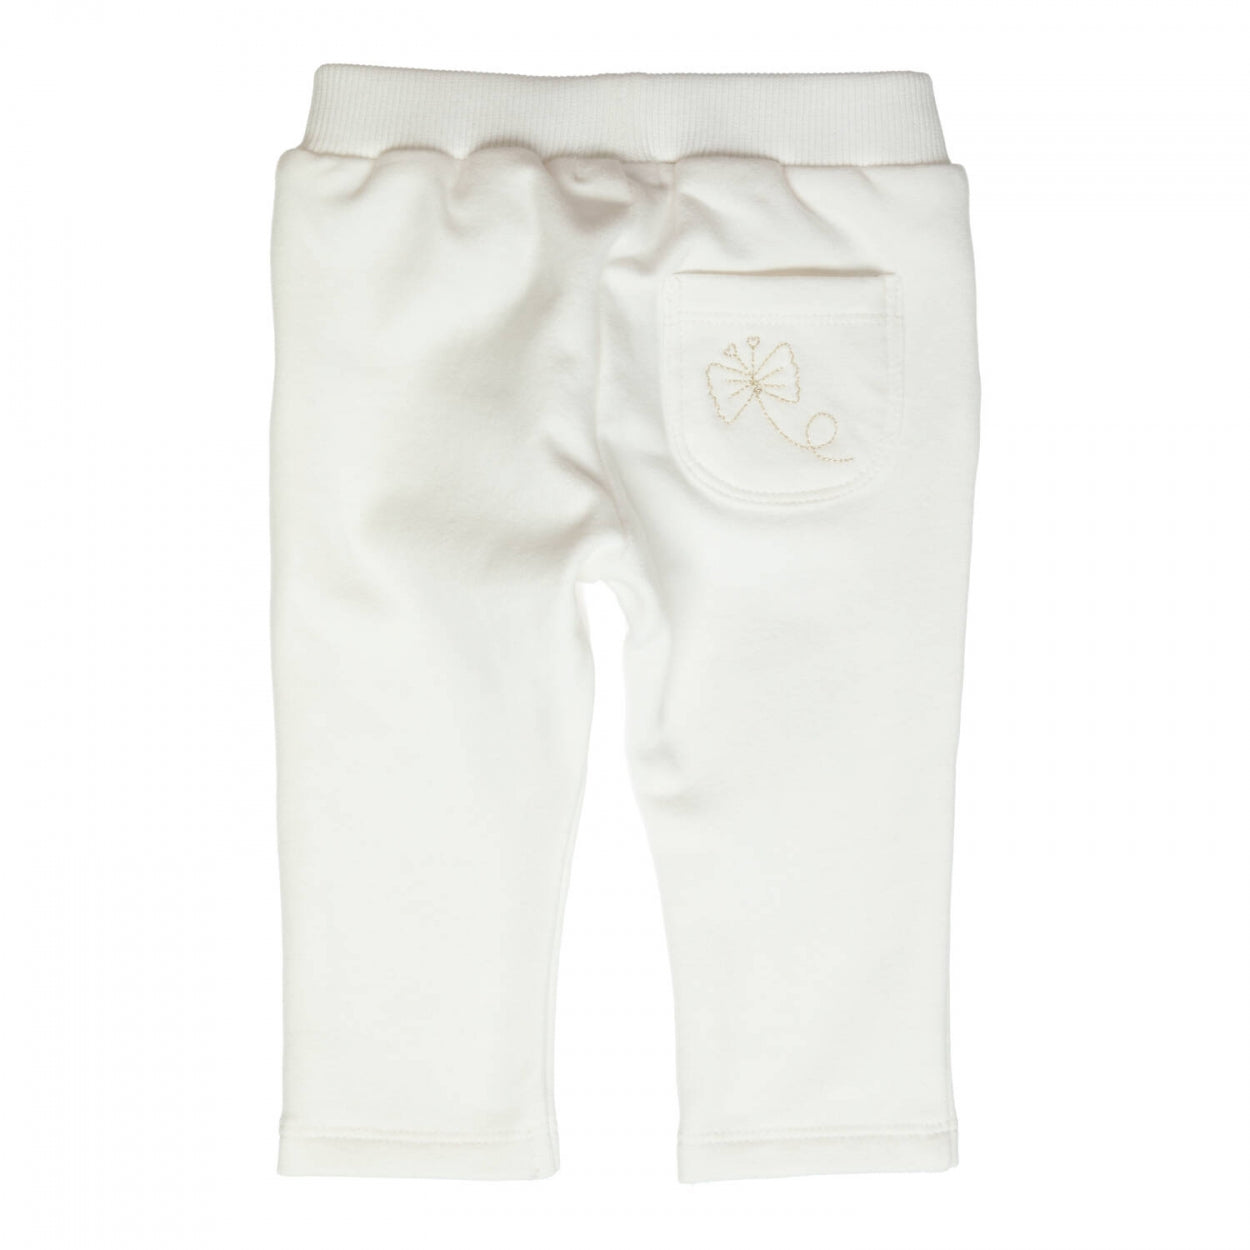 Meisjes Trousers Carbondoux van Gymp in de kleur Off White in maat 86.